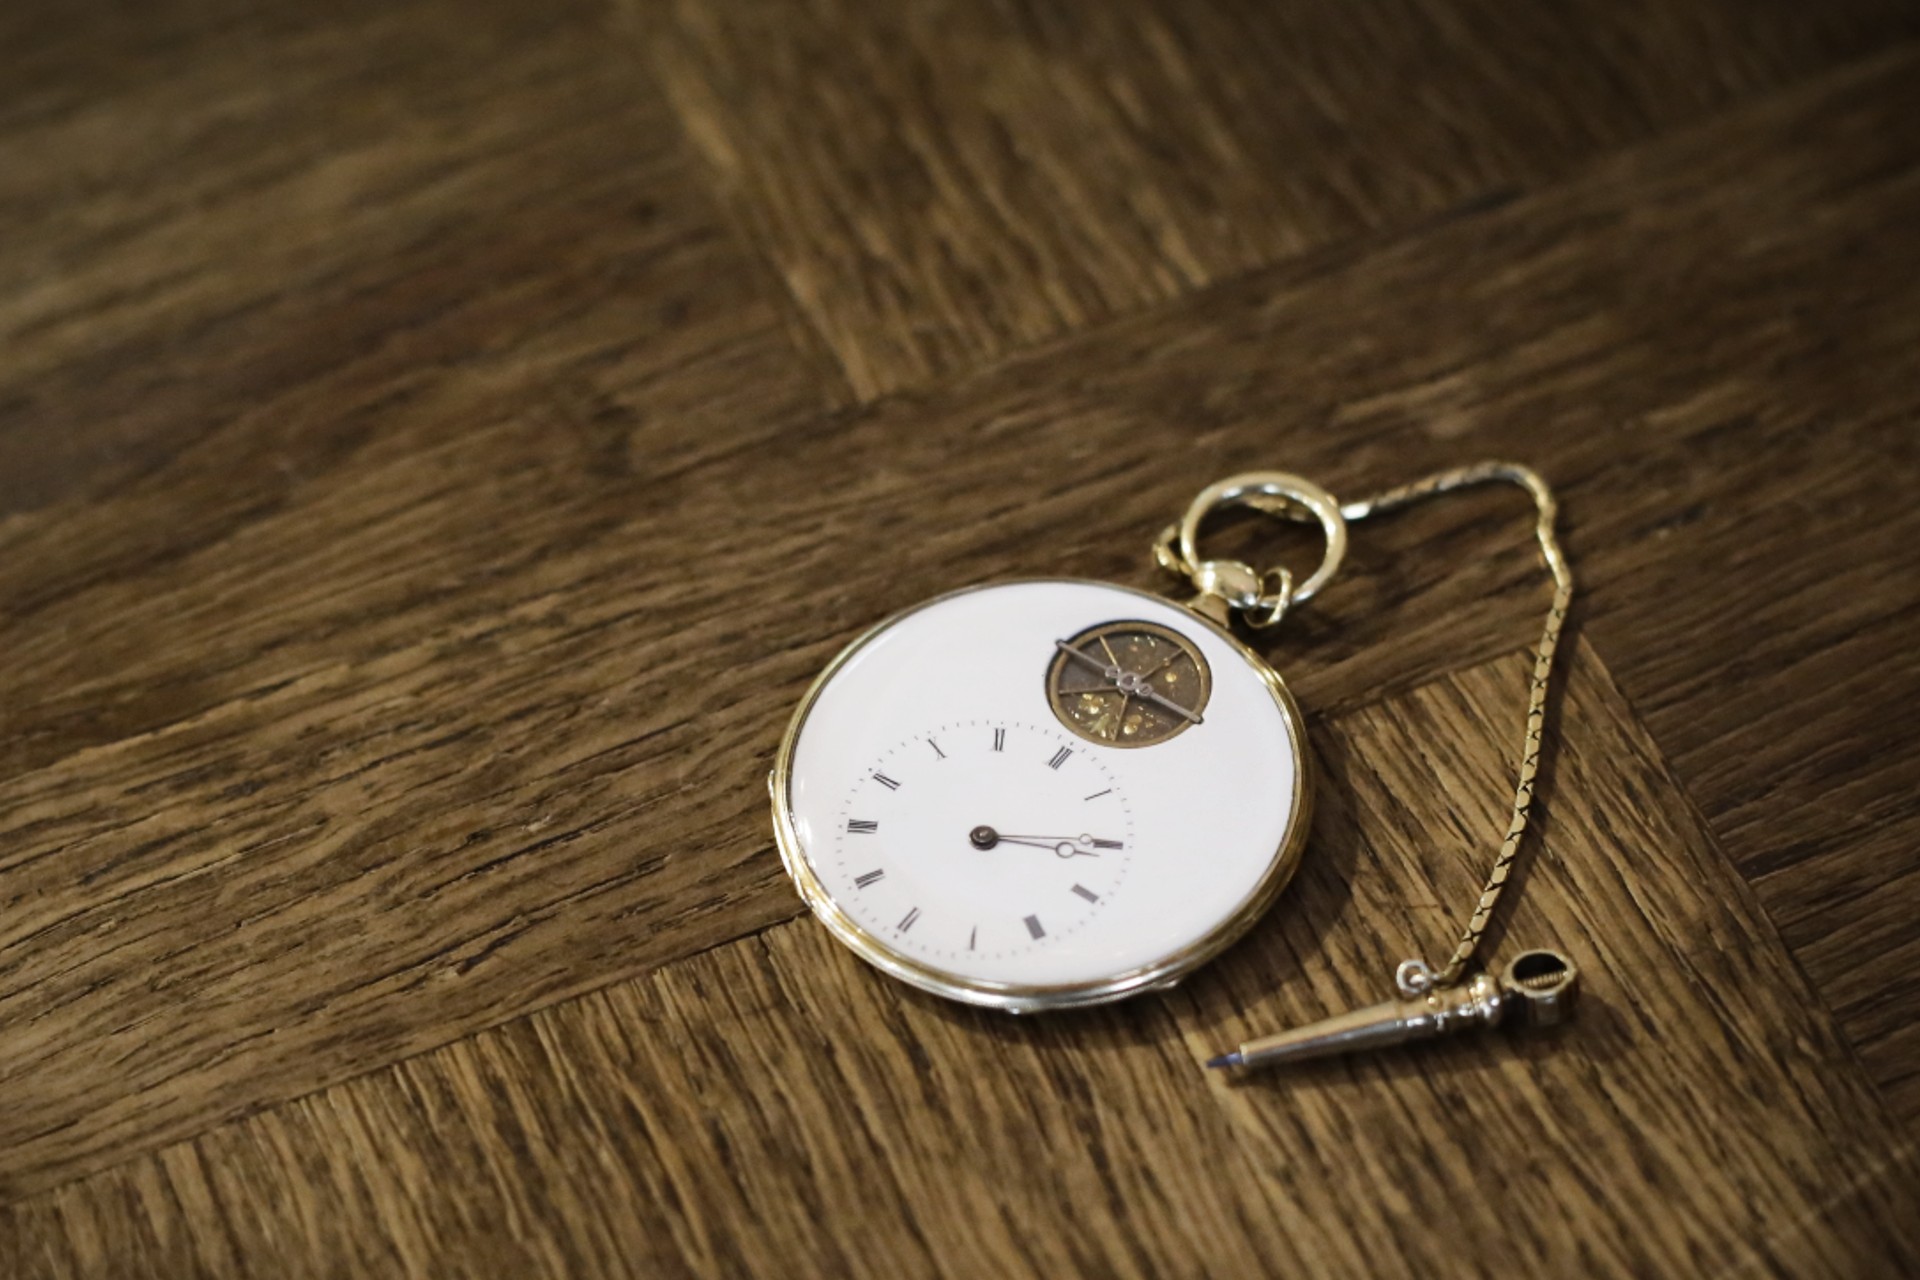 300年前の時計は直せるのに、30年前の時計は直せない。現代の